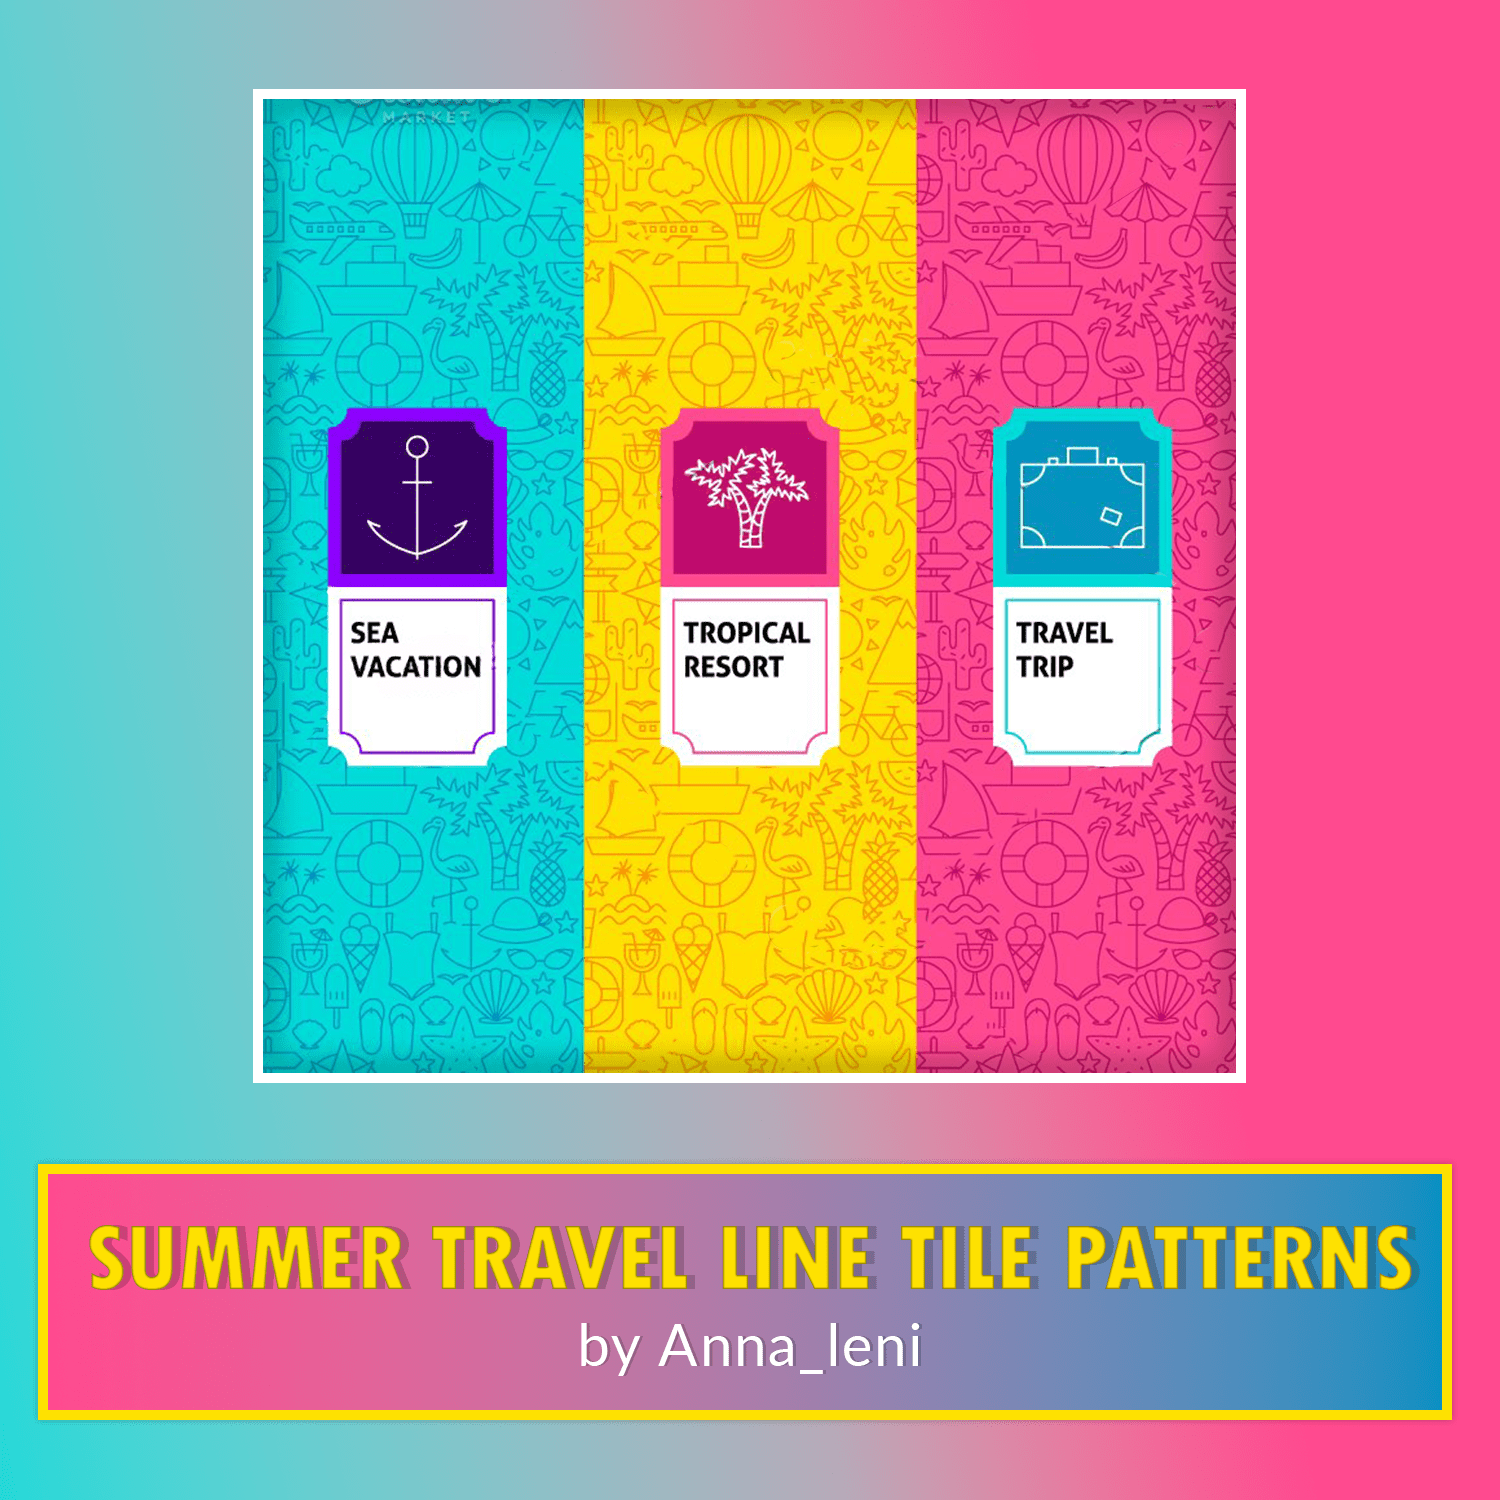 Summer Travel Line Tile Patterns cover.